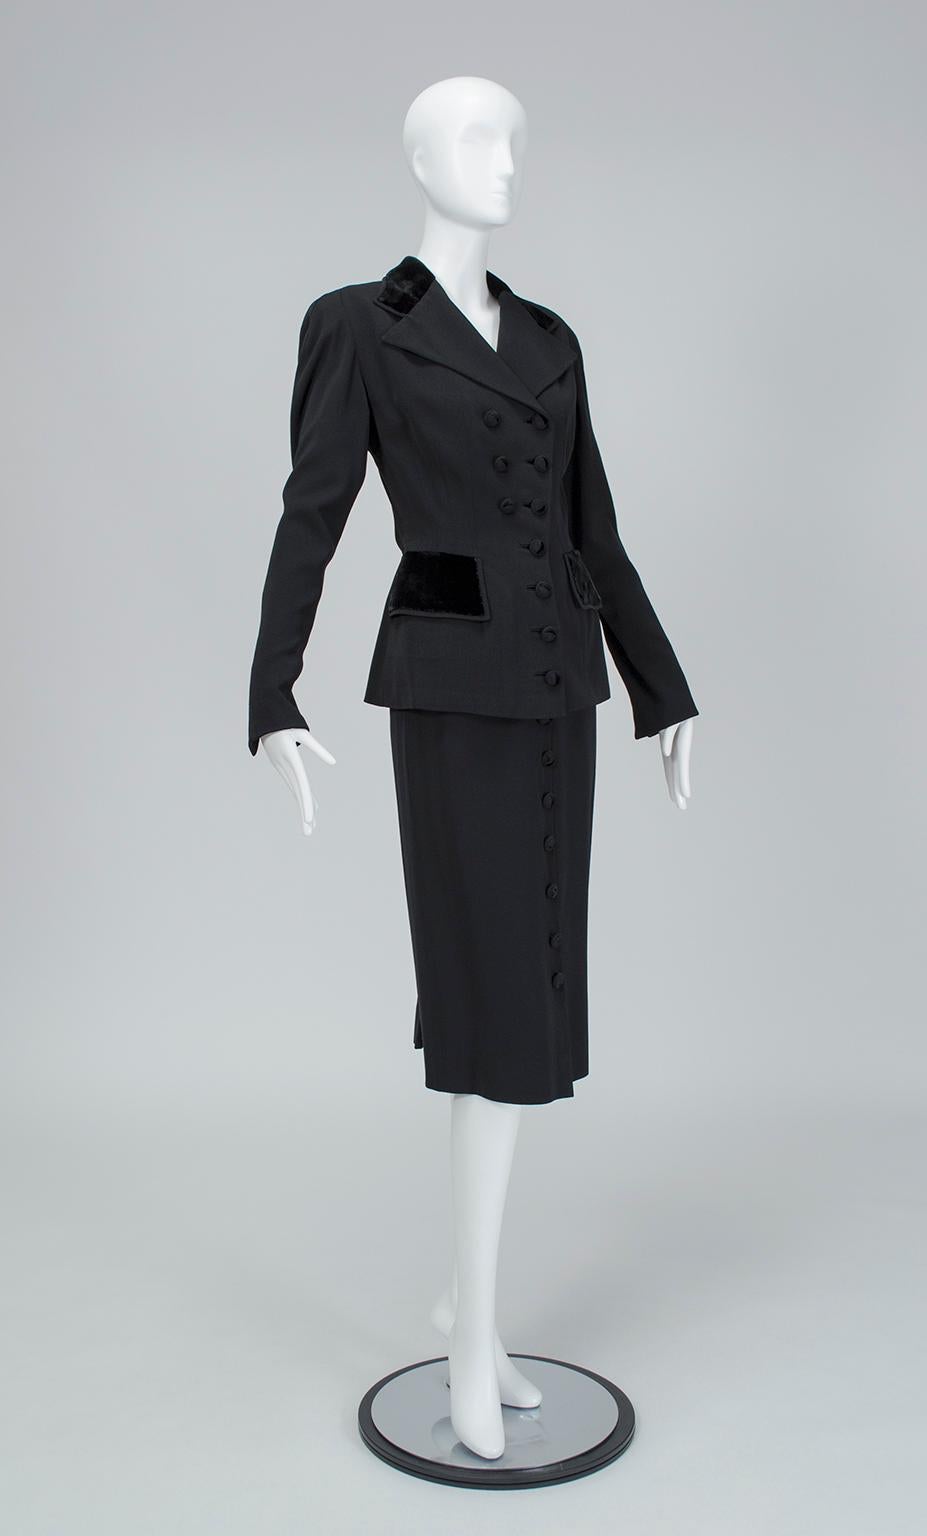 Mit seiner doppelreihigen Jacke, dem knieumspielenden Rock, den vielen Knöpfen und den Samtdetails ist dieser Anzug der Inbegriff des von Rosalind Russell in den 1940er Jahren populär gemachten 